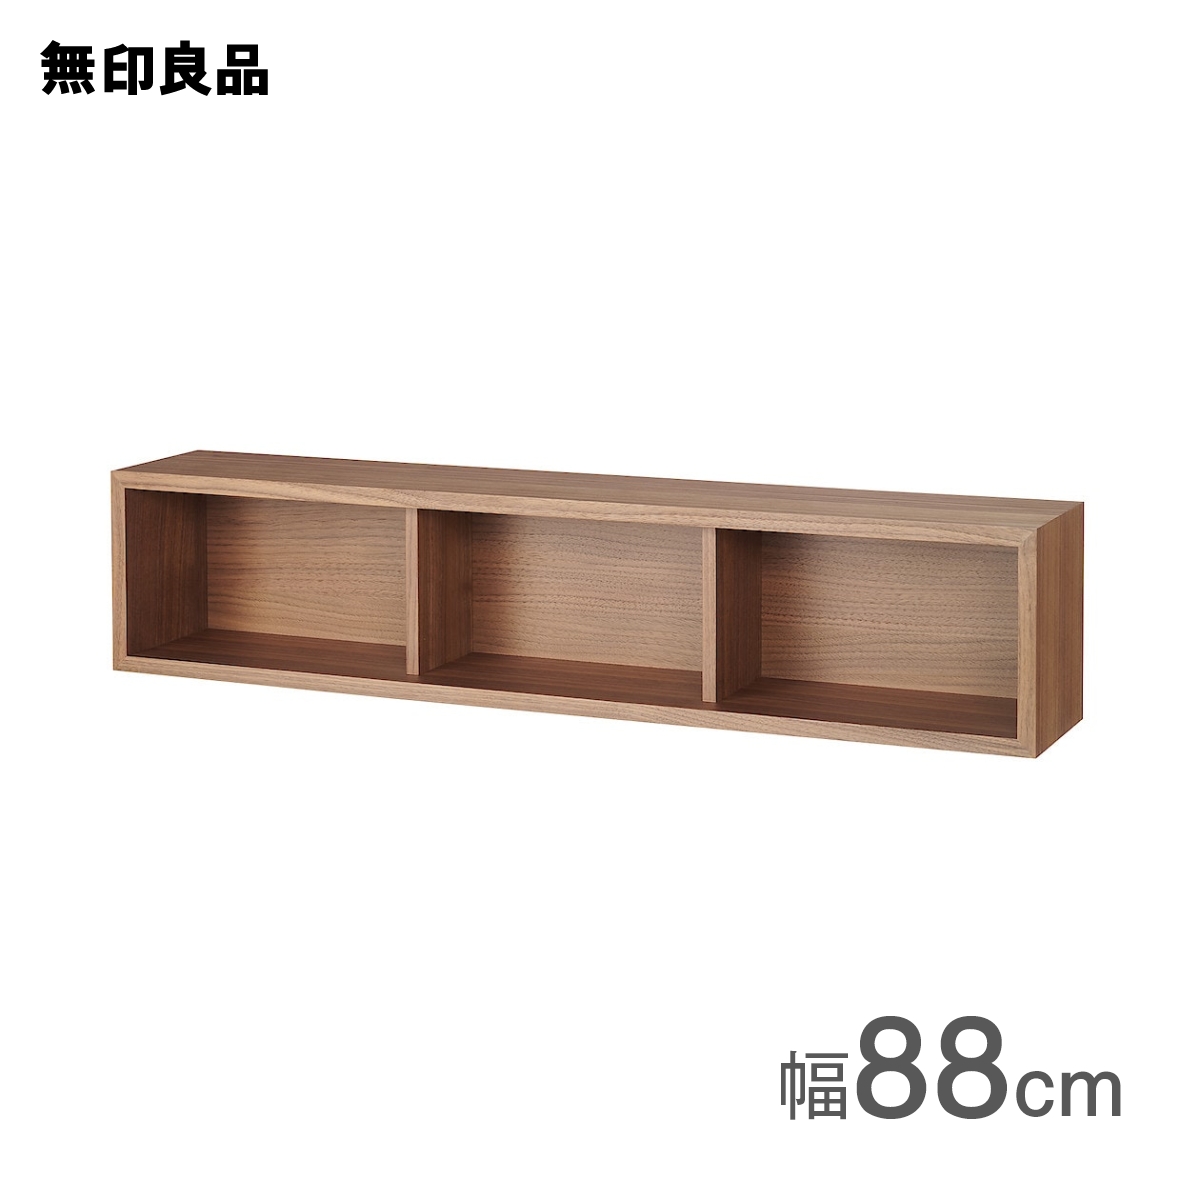 【楽天市場】【無印良品 公式】壁に付けられる家具箱 オーク材突板 